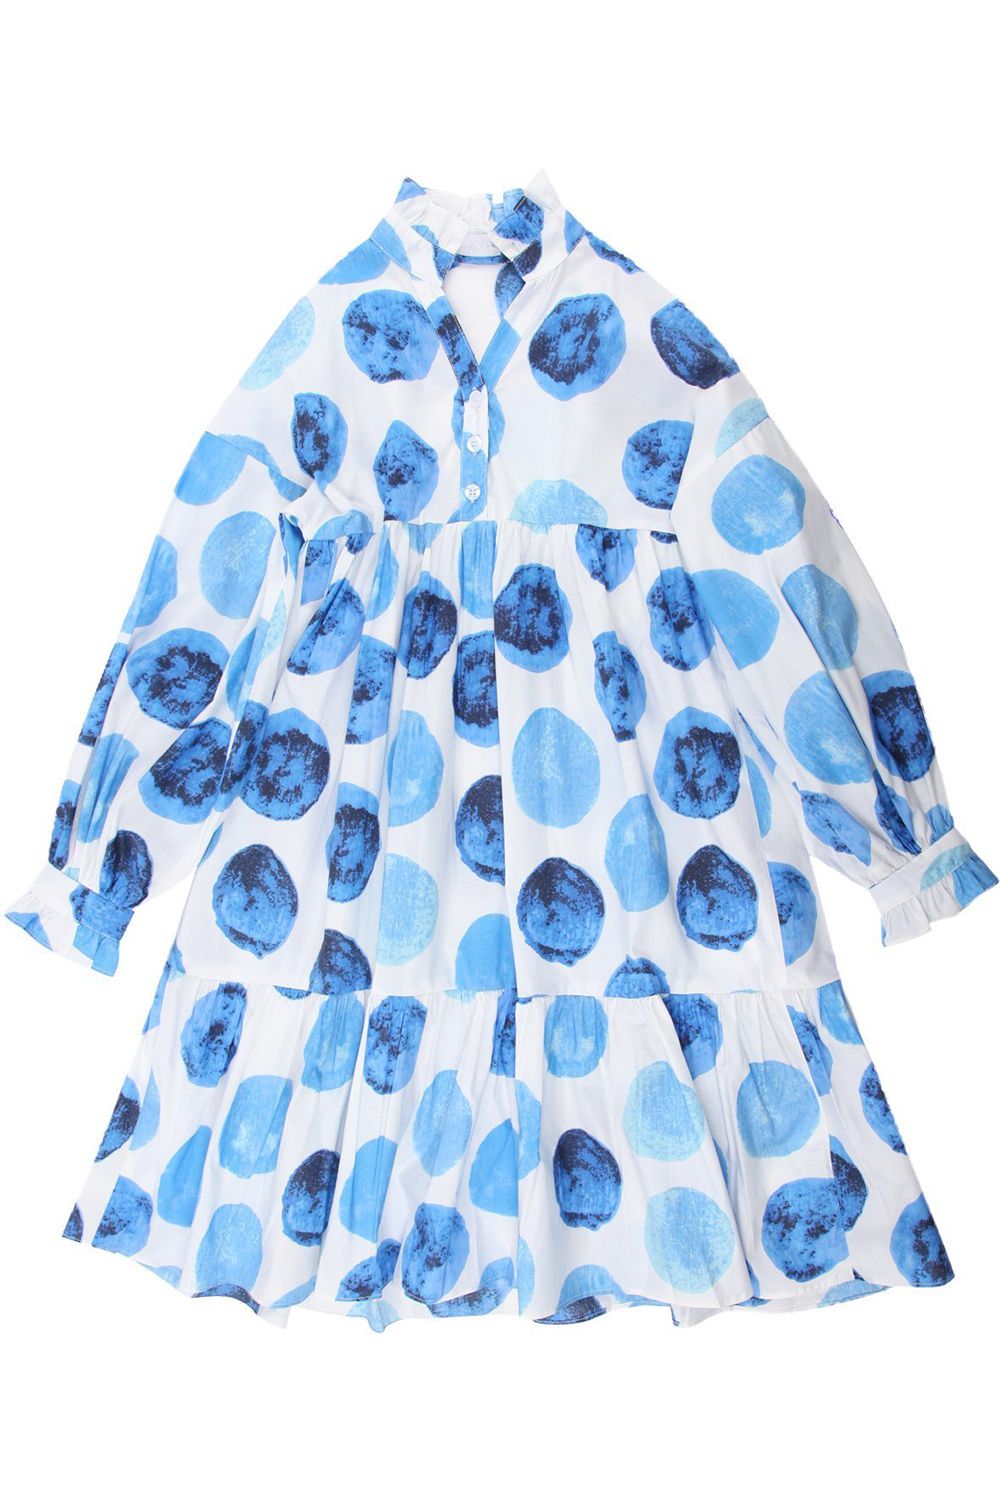 Платье Смена, размер 128-64, цвет голубой 40024 - фото 1